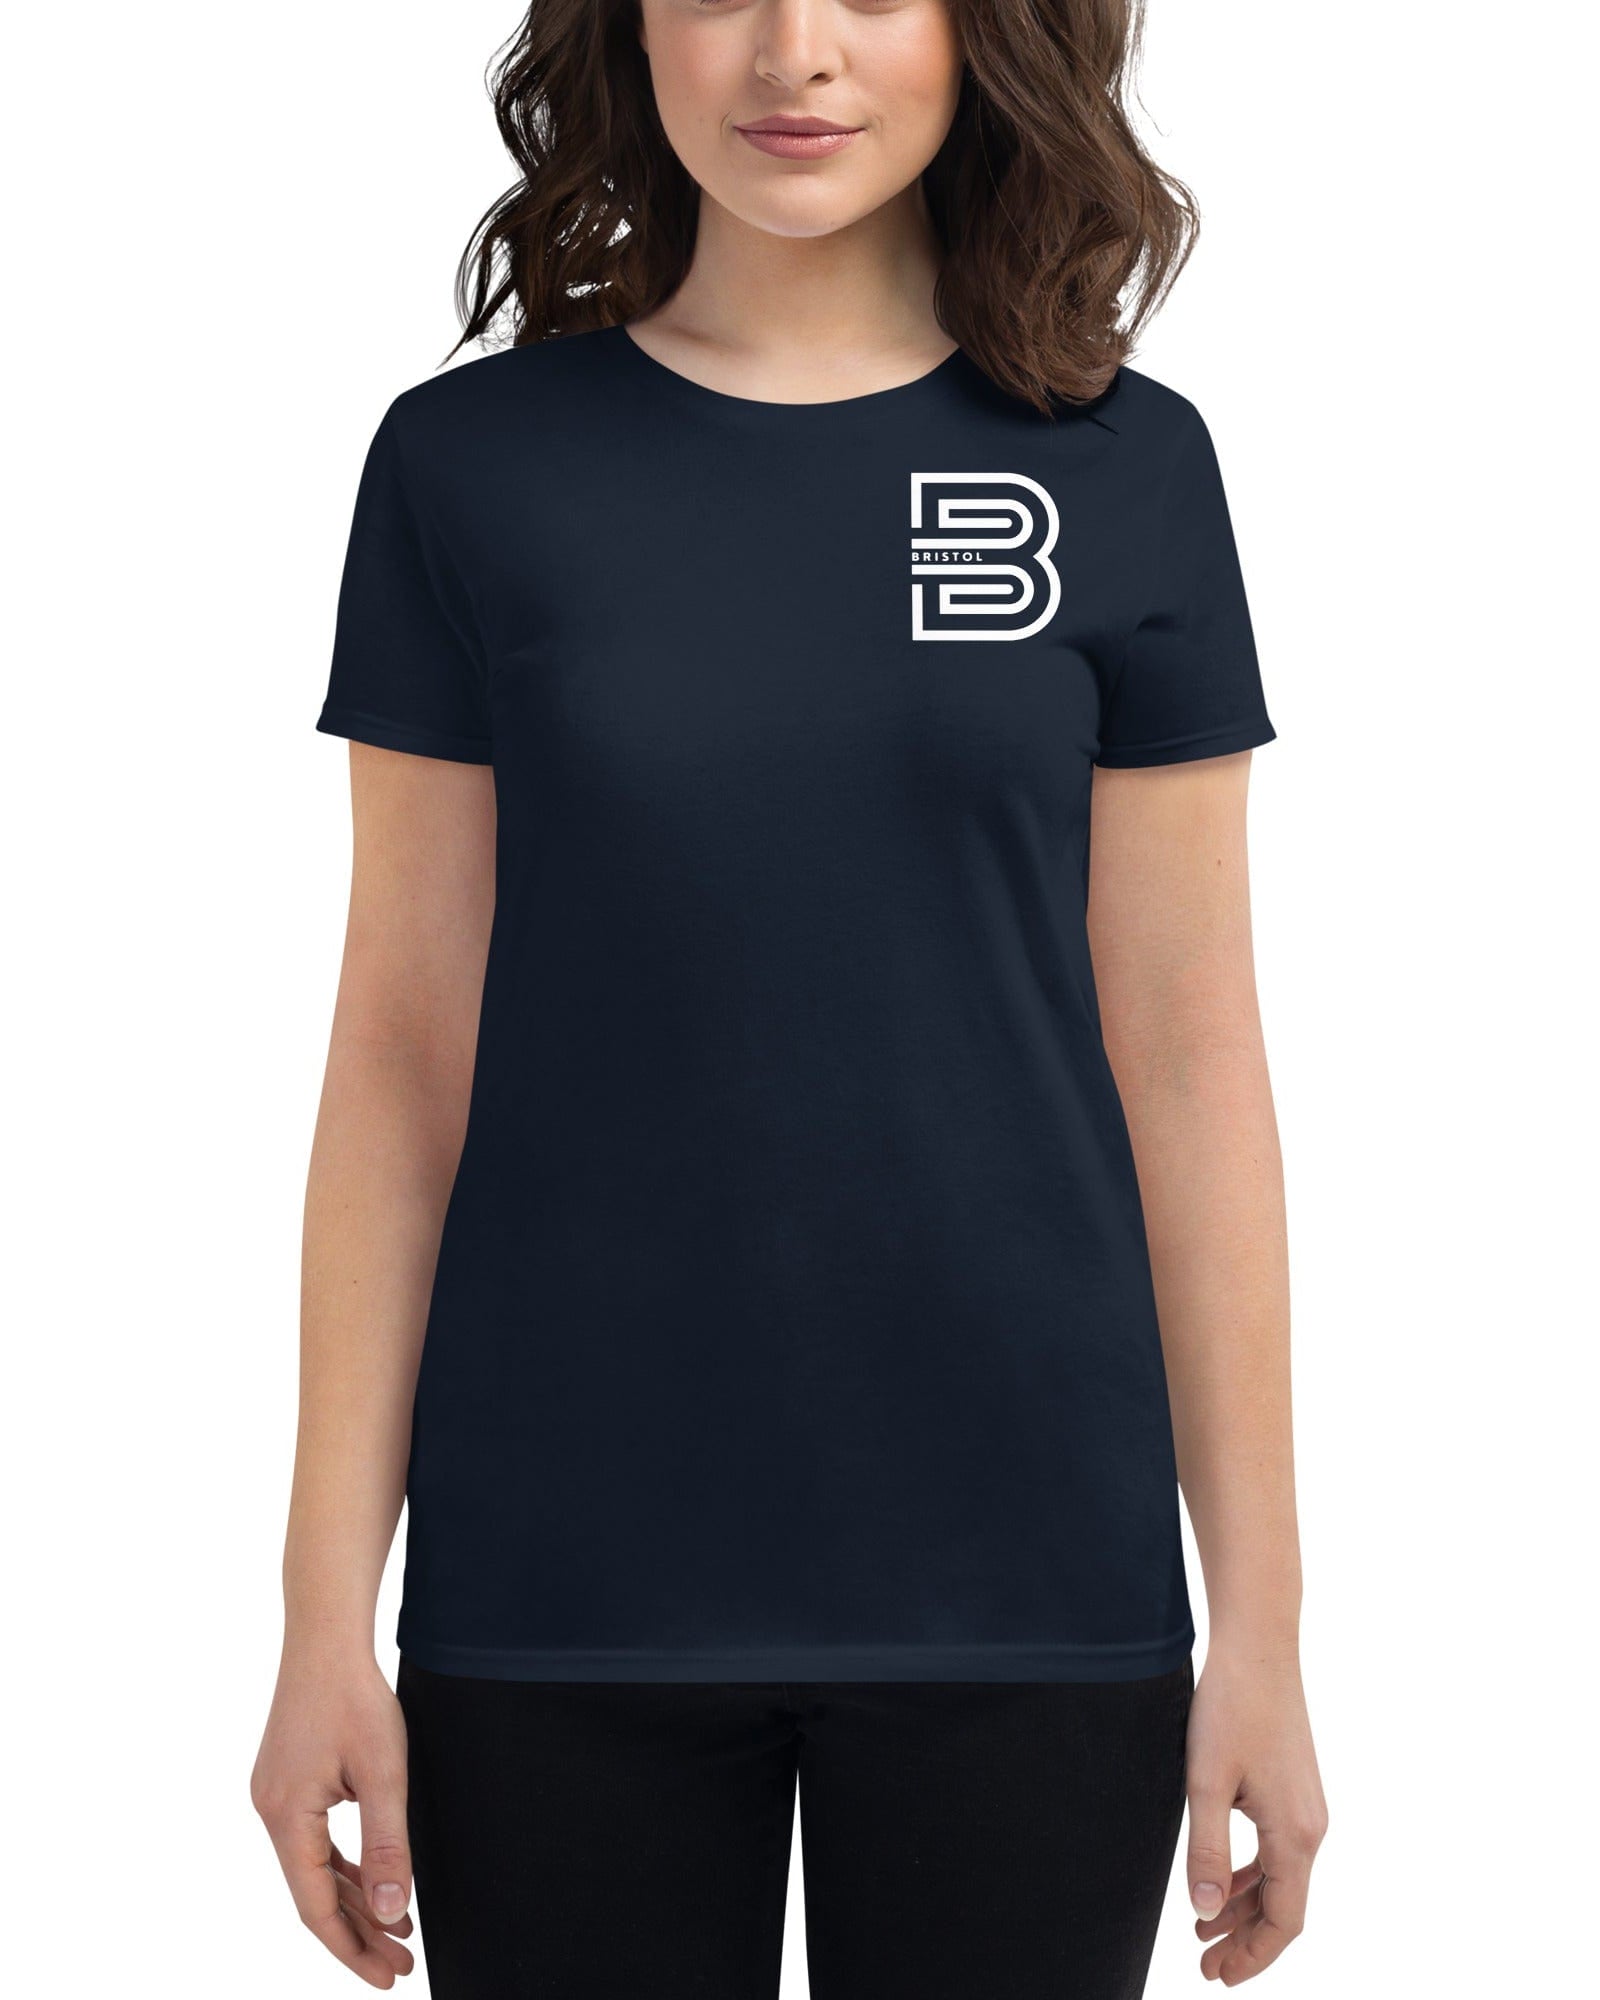 Bristol B Women's T-shirt Shirts & Tops Jolly & Goode